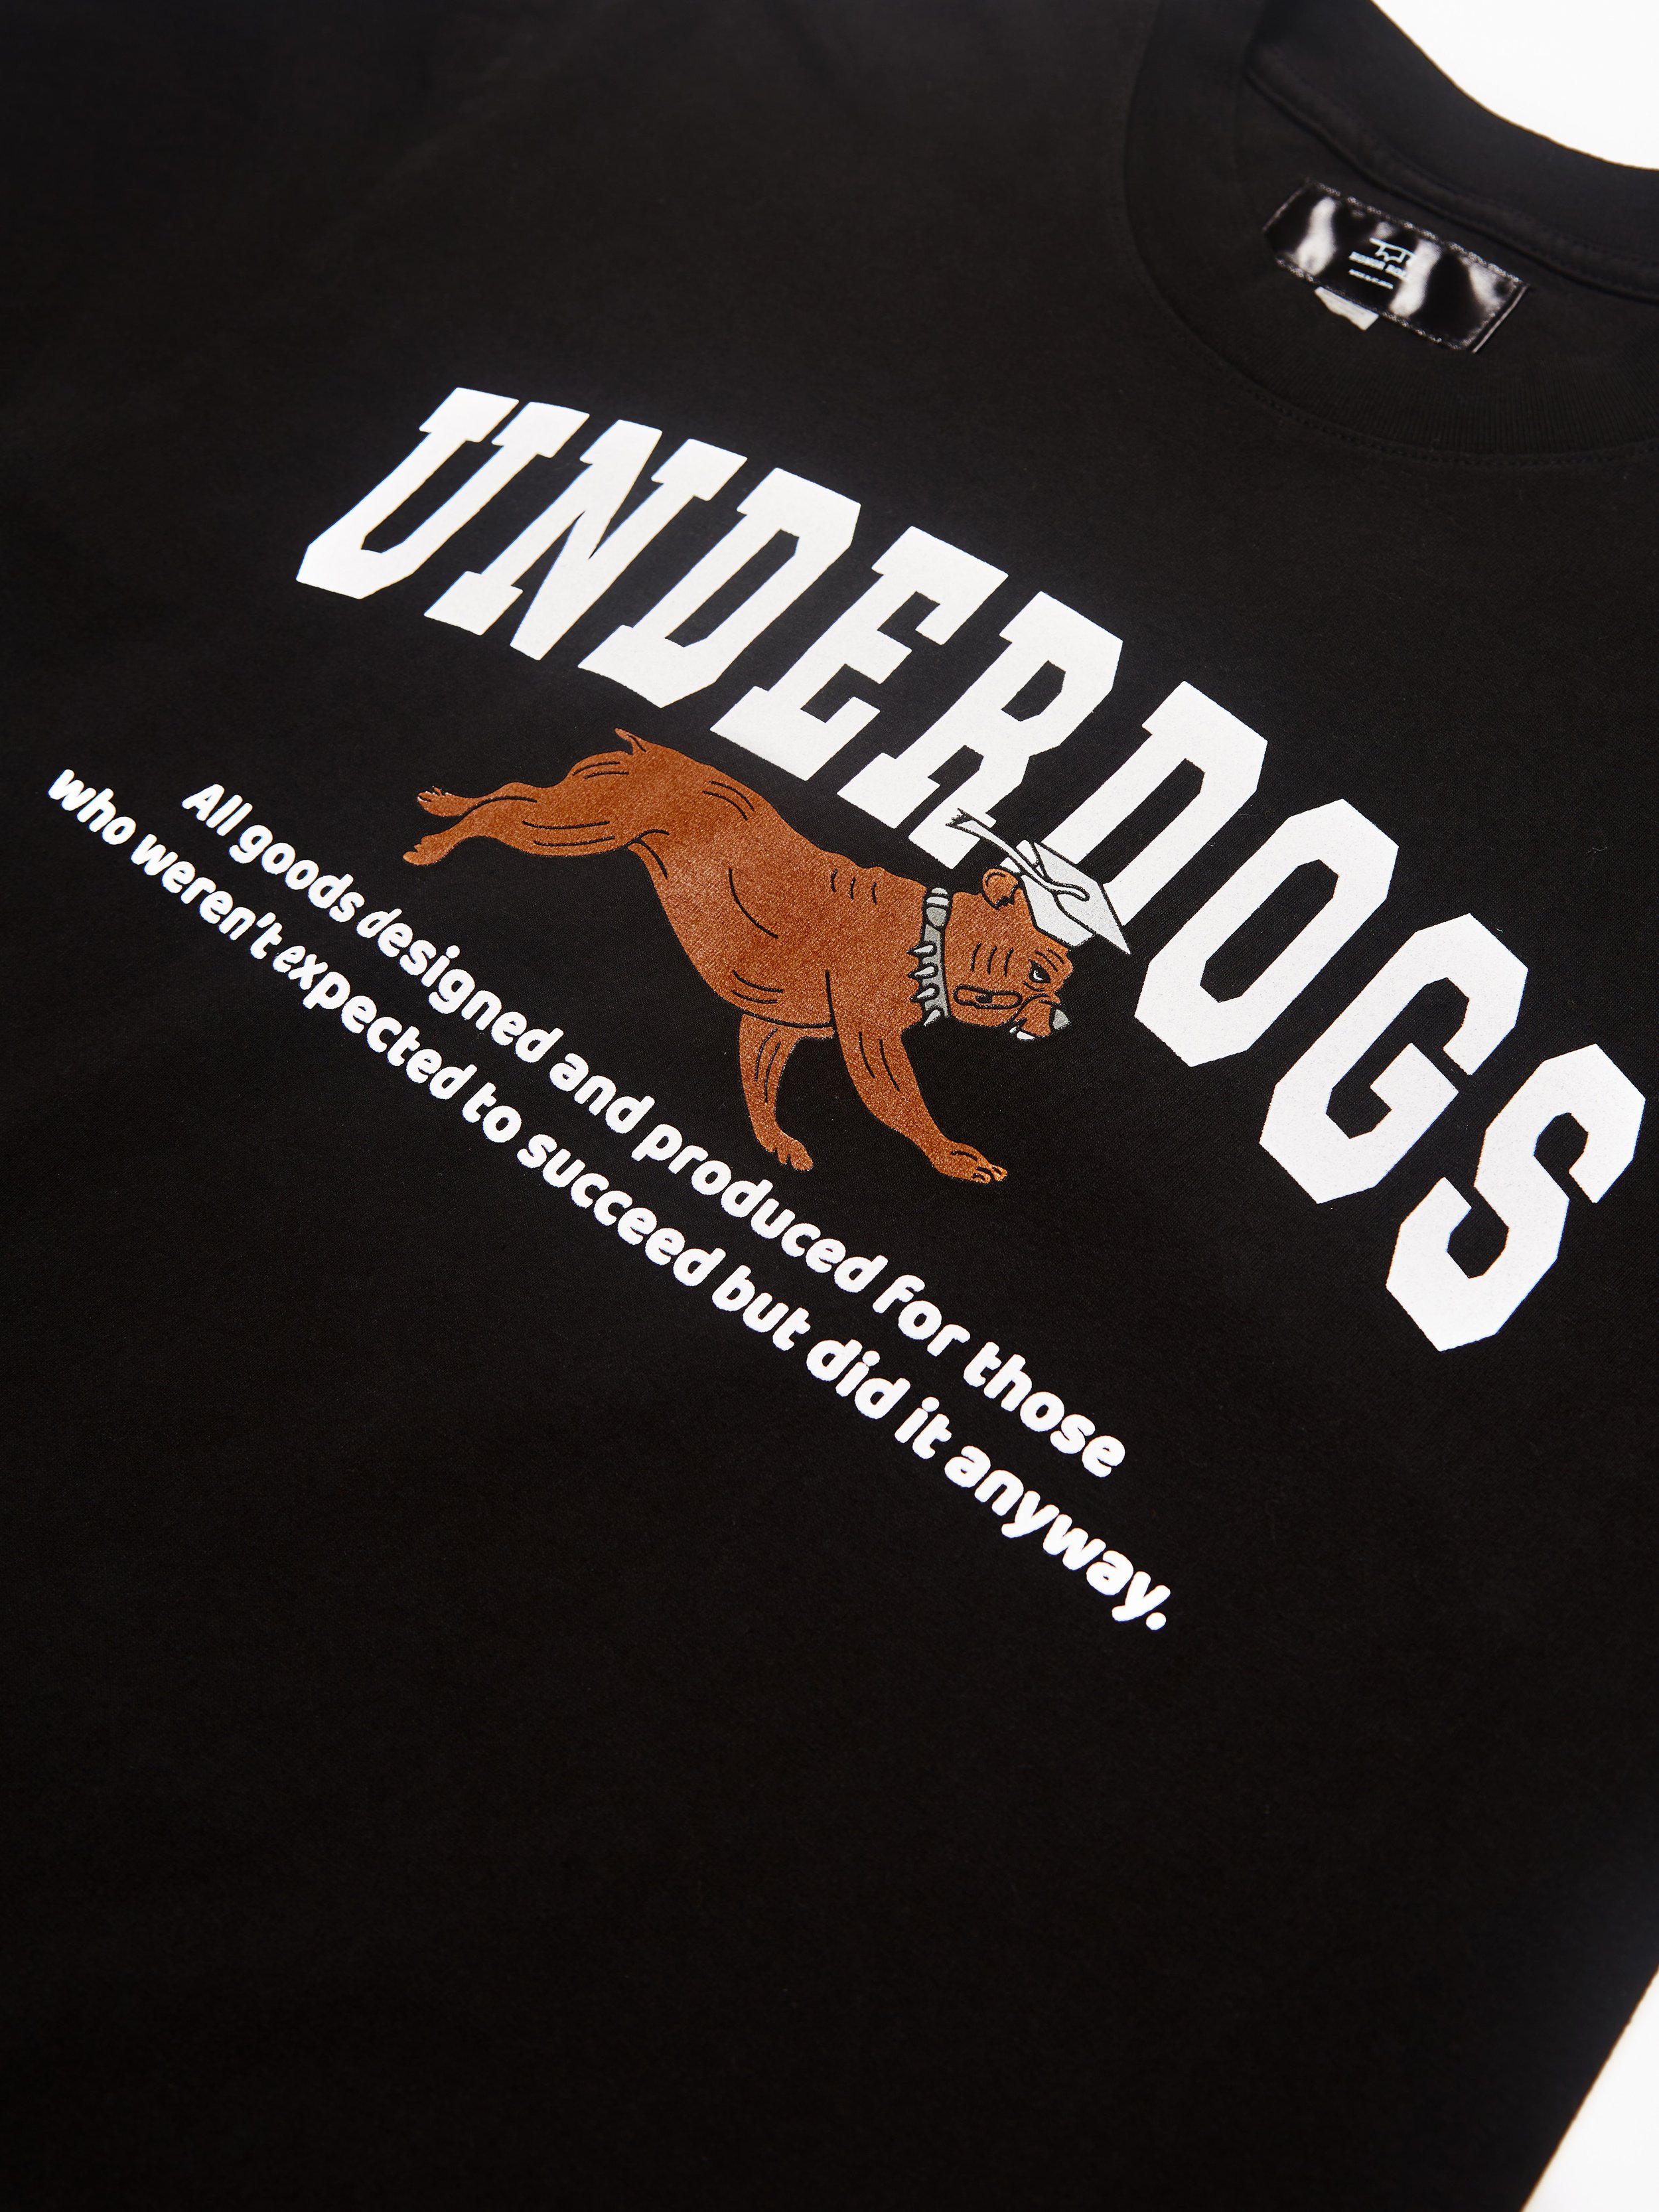 Underdog-3.jpg